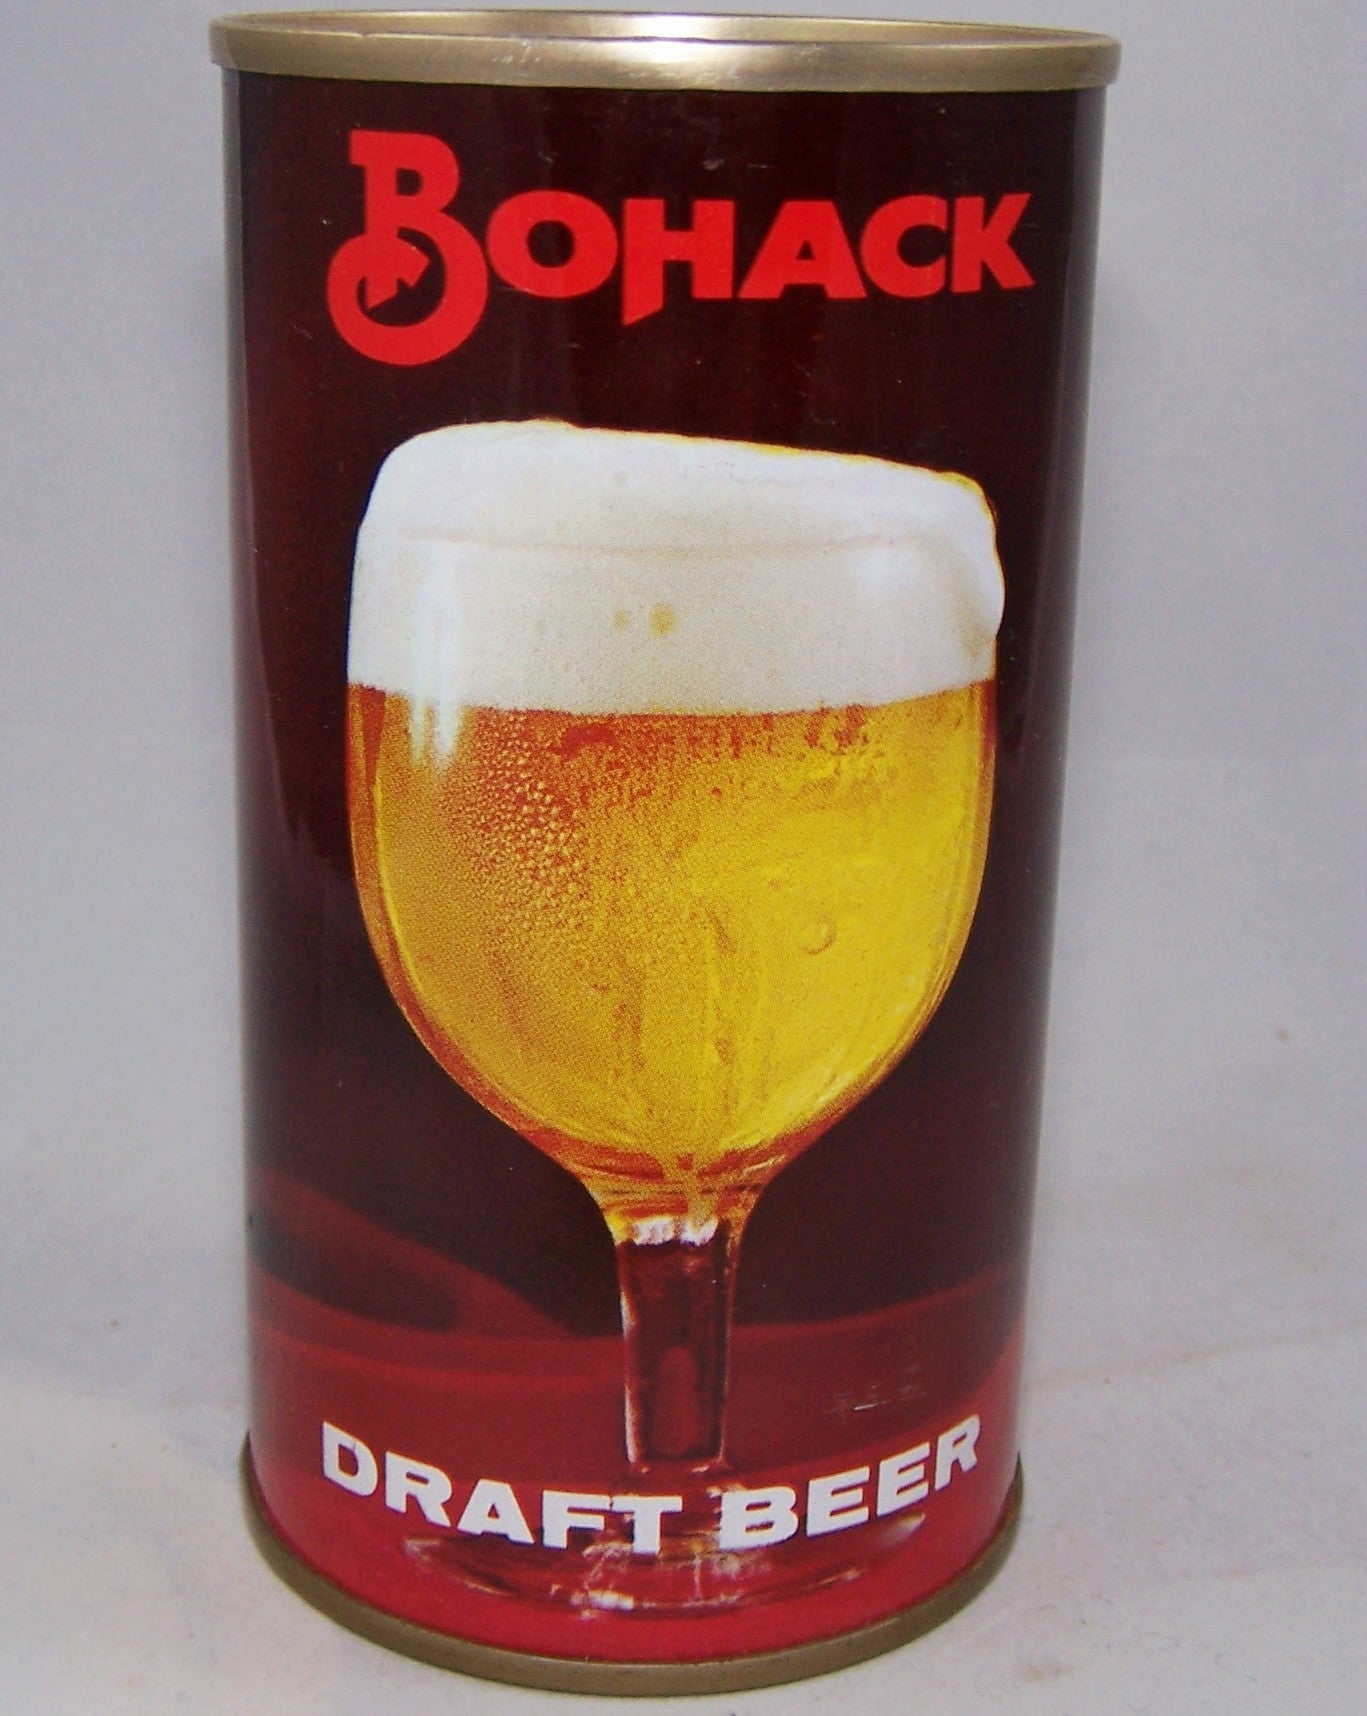 Bohack Draft Beer, USBC II 44-14, Grade A1+ Sold on 07/31/16